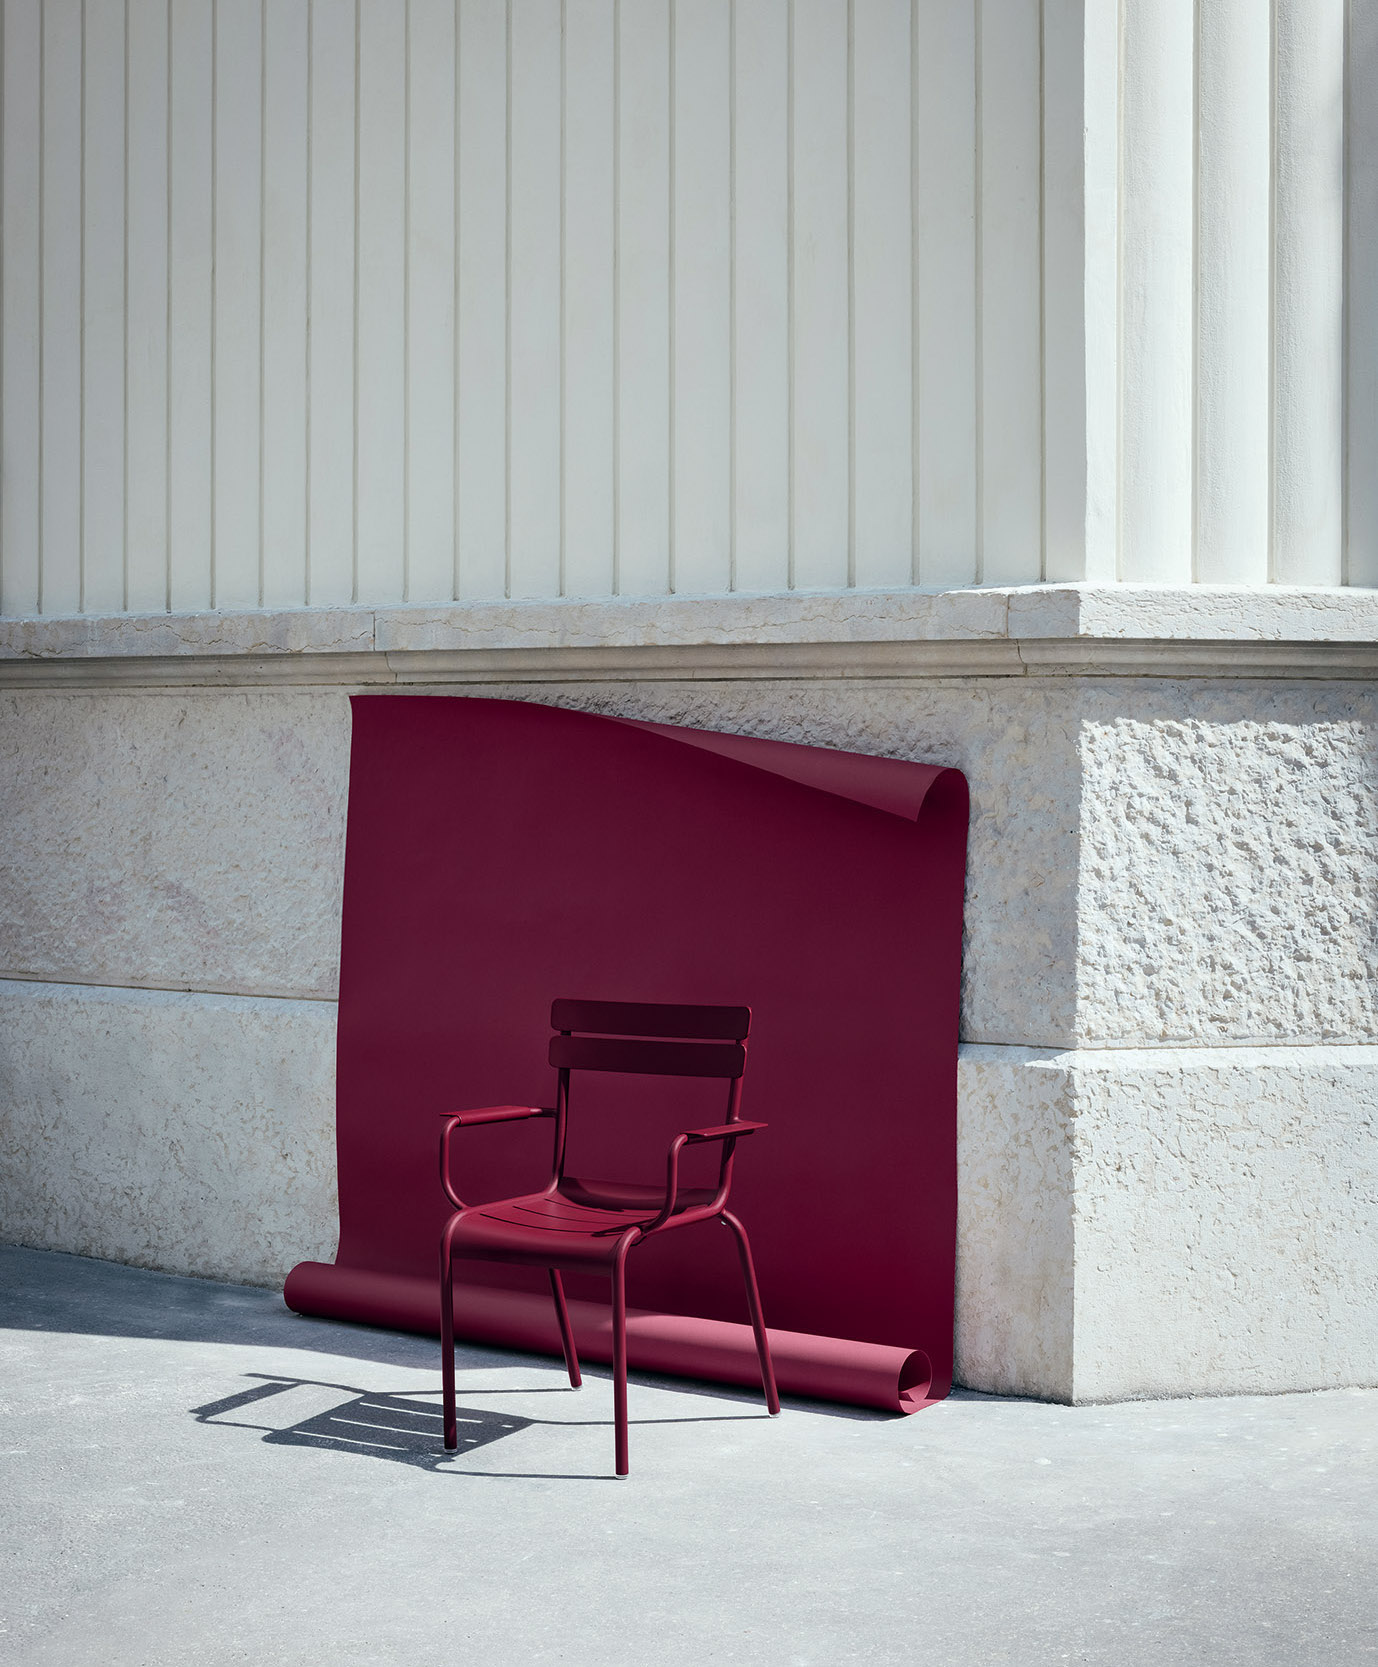 Objekt der Begierde: Luxembourg Stuhl von fermob